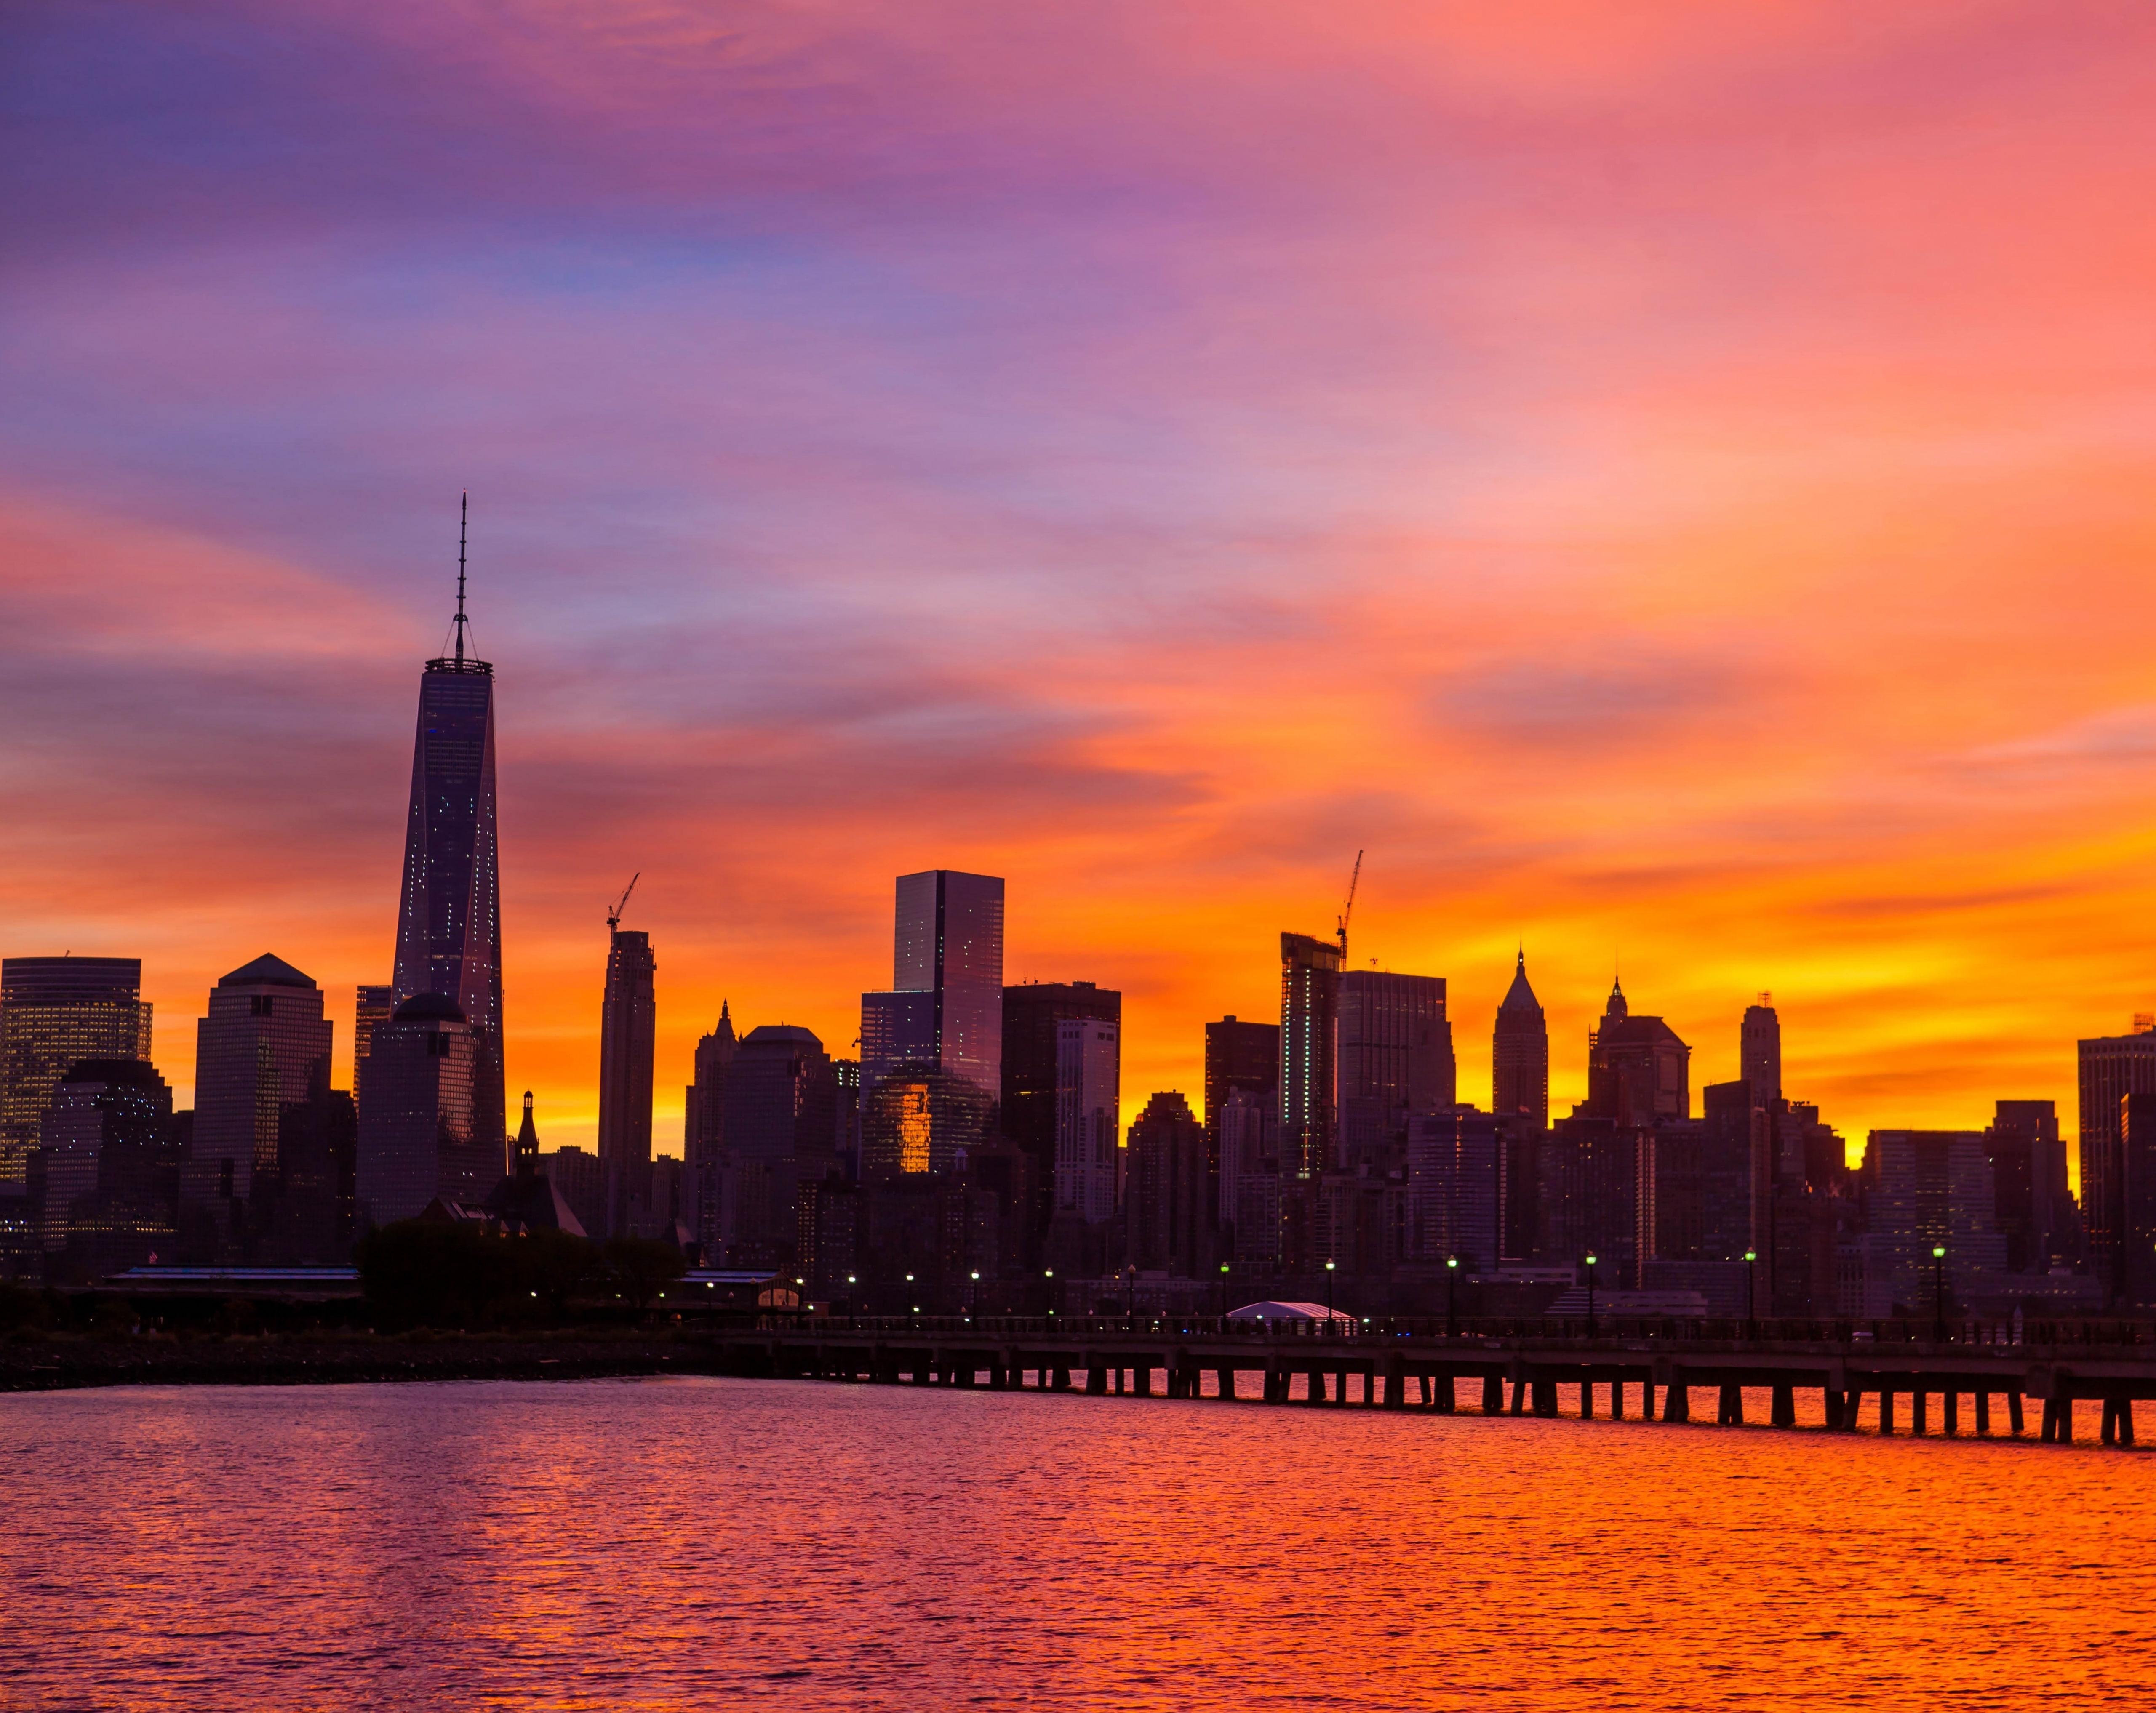 New York City Skyline Sunrise, city building photo, United States